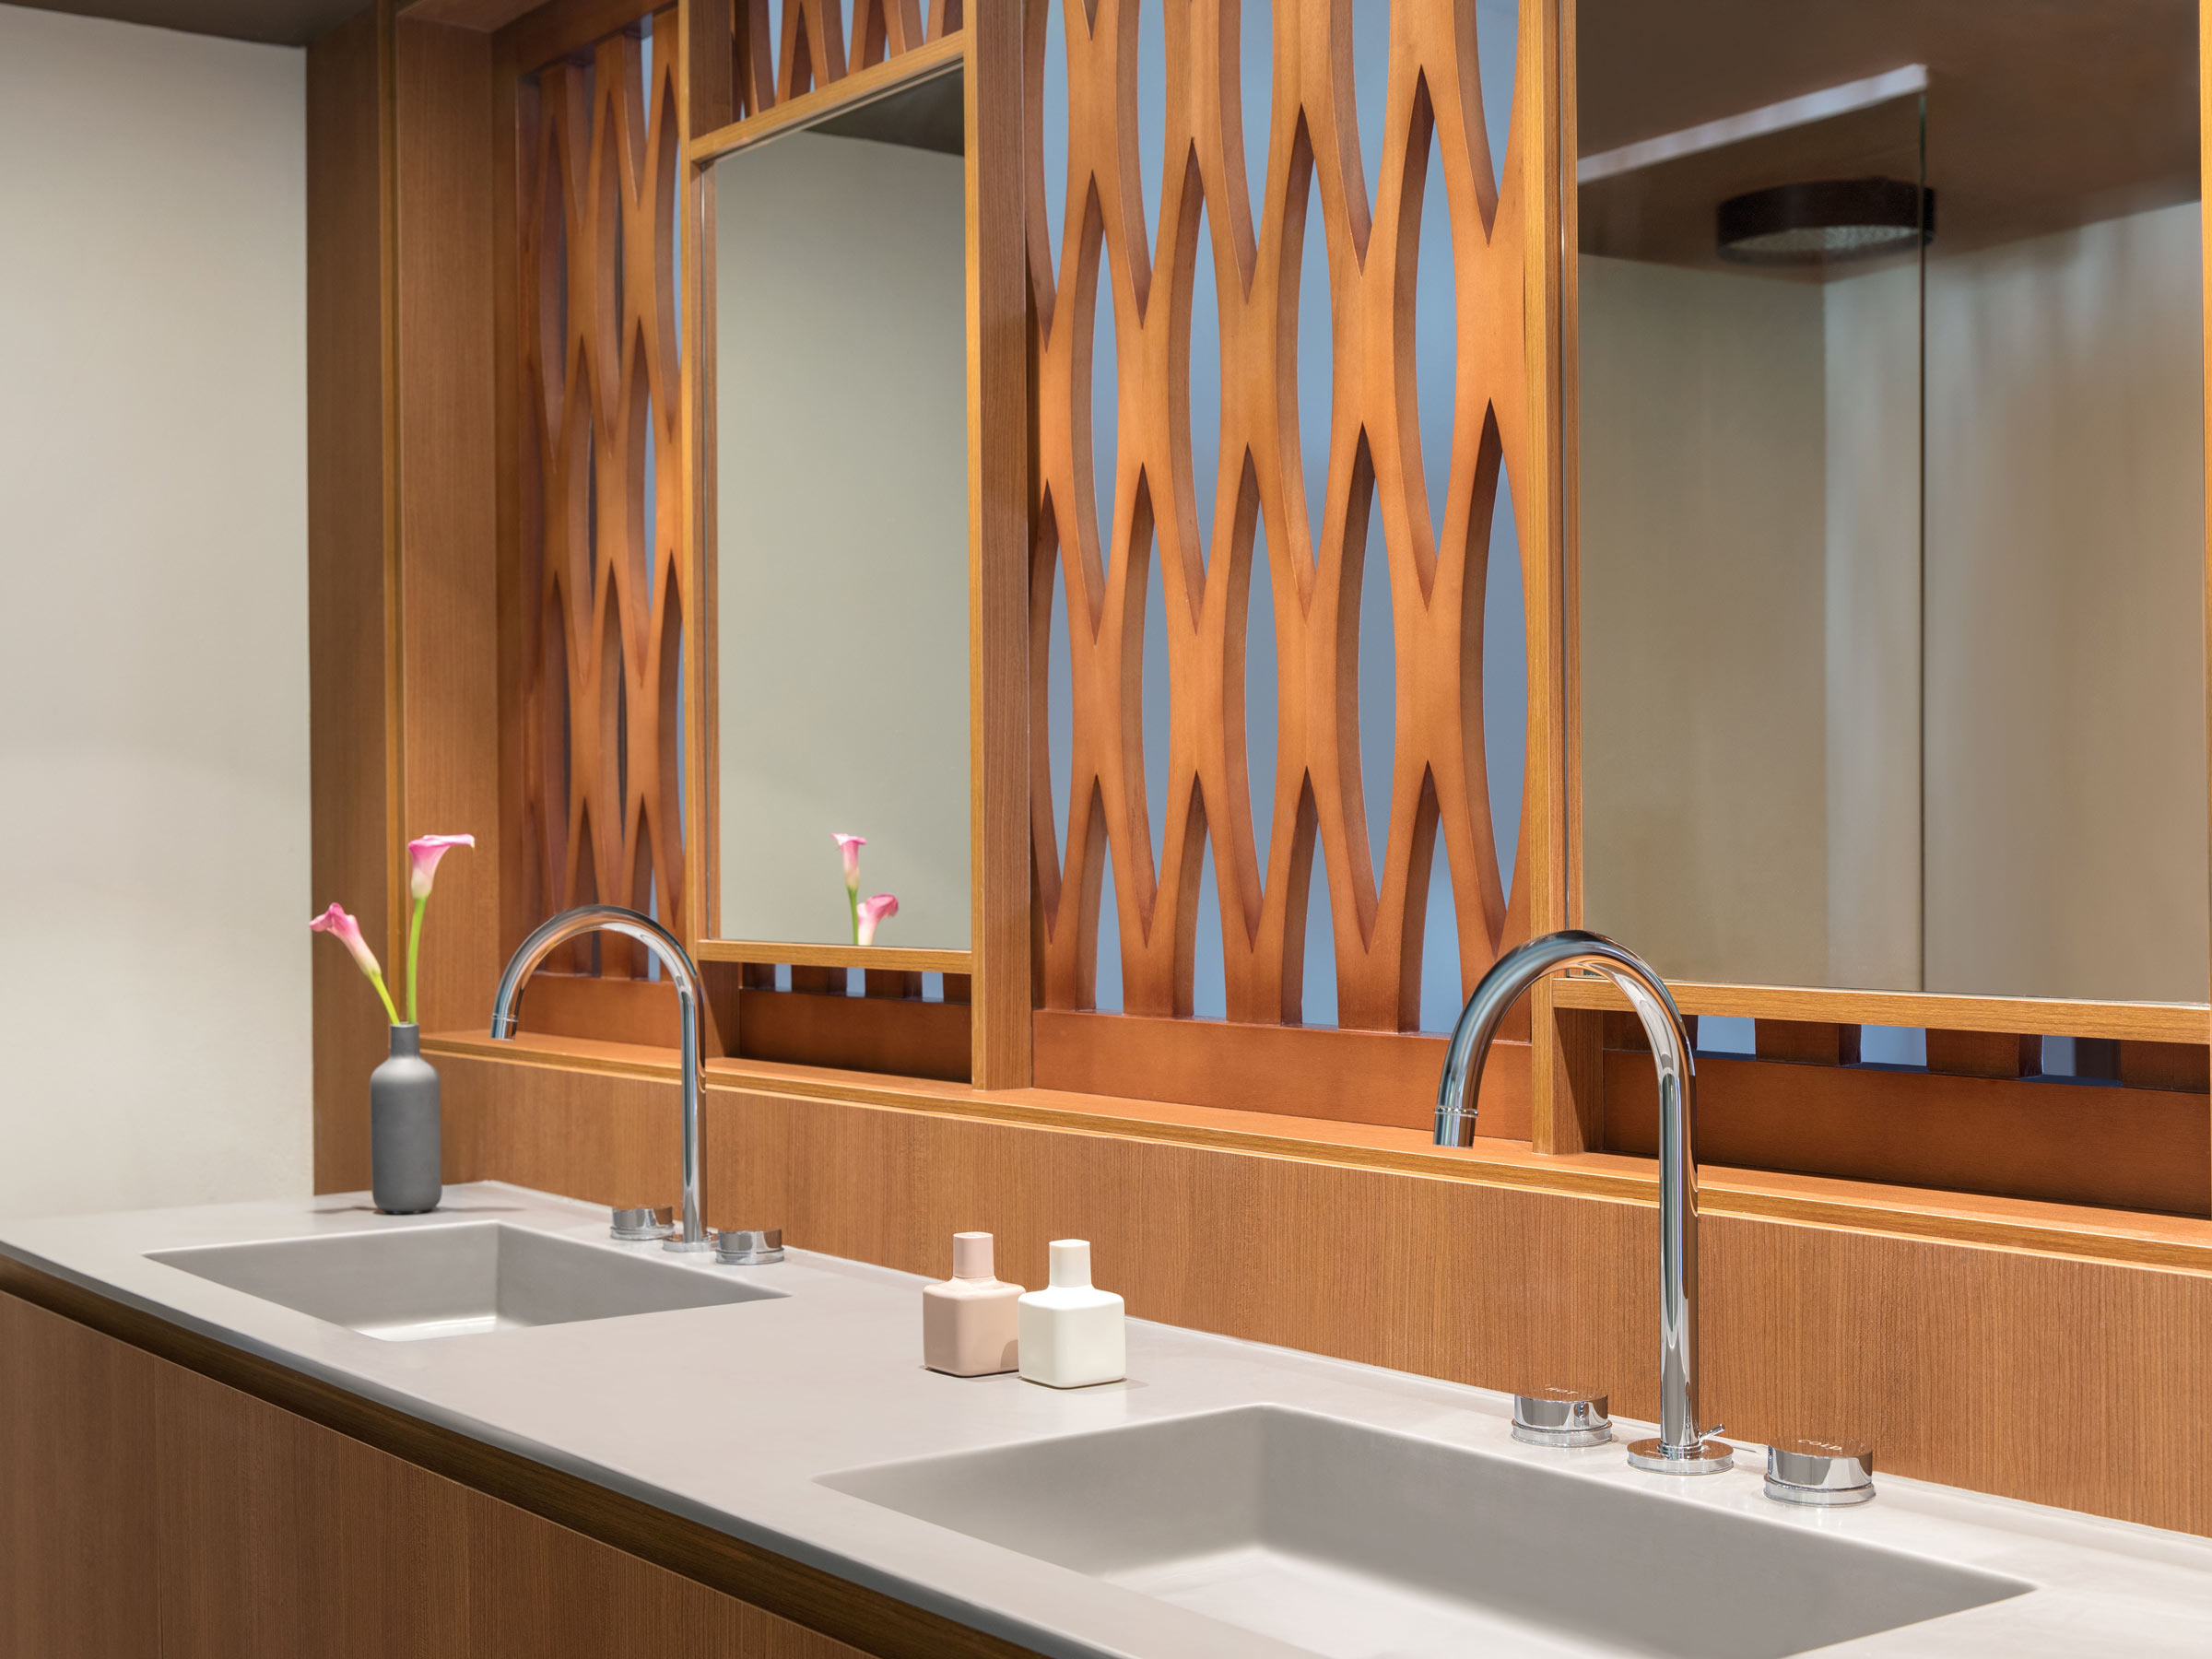 Jamaica Resort Suite Bathroom with Double Vanities